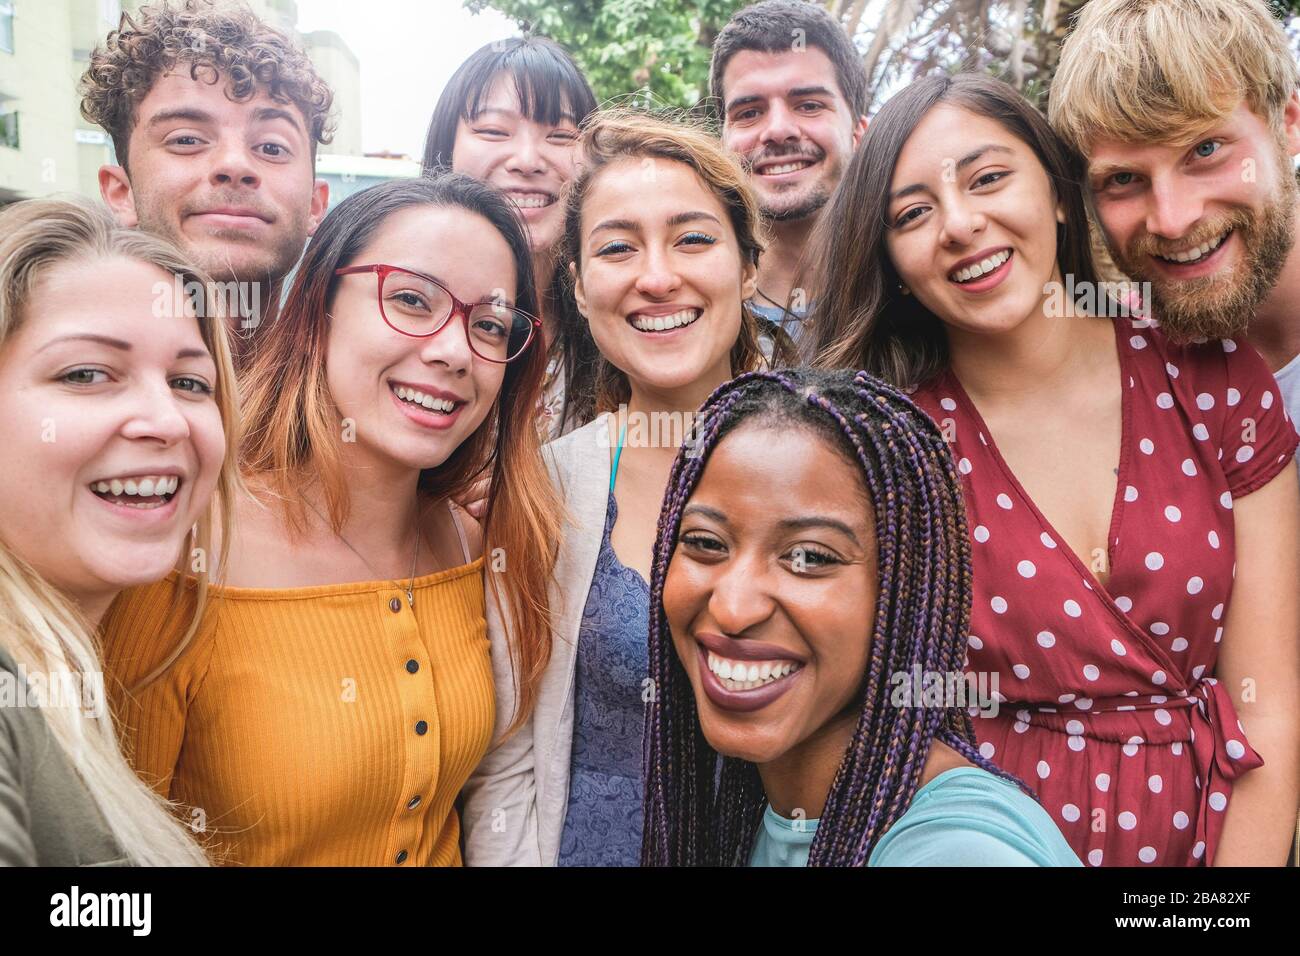 Fröhliche Freunde aus verschiedenen Kulturen und Rassen, die Fotos machen, lustige Gesichter machen - eine Generation von tausendjährigen und ein Freundschaftskonzept mit jungen Menschen Stockfoto